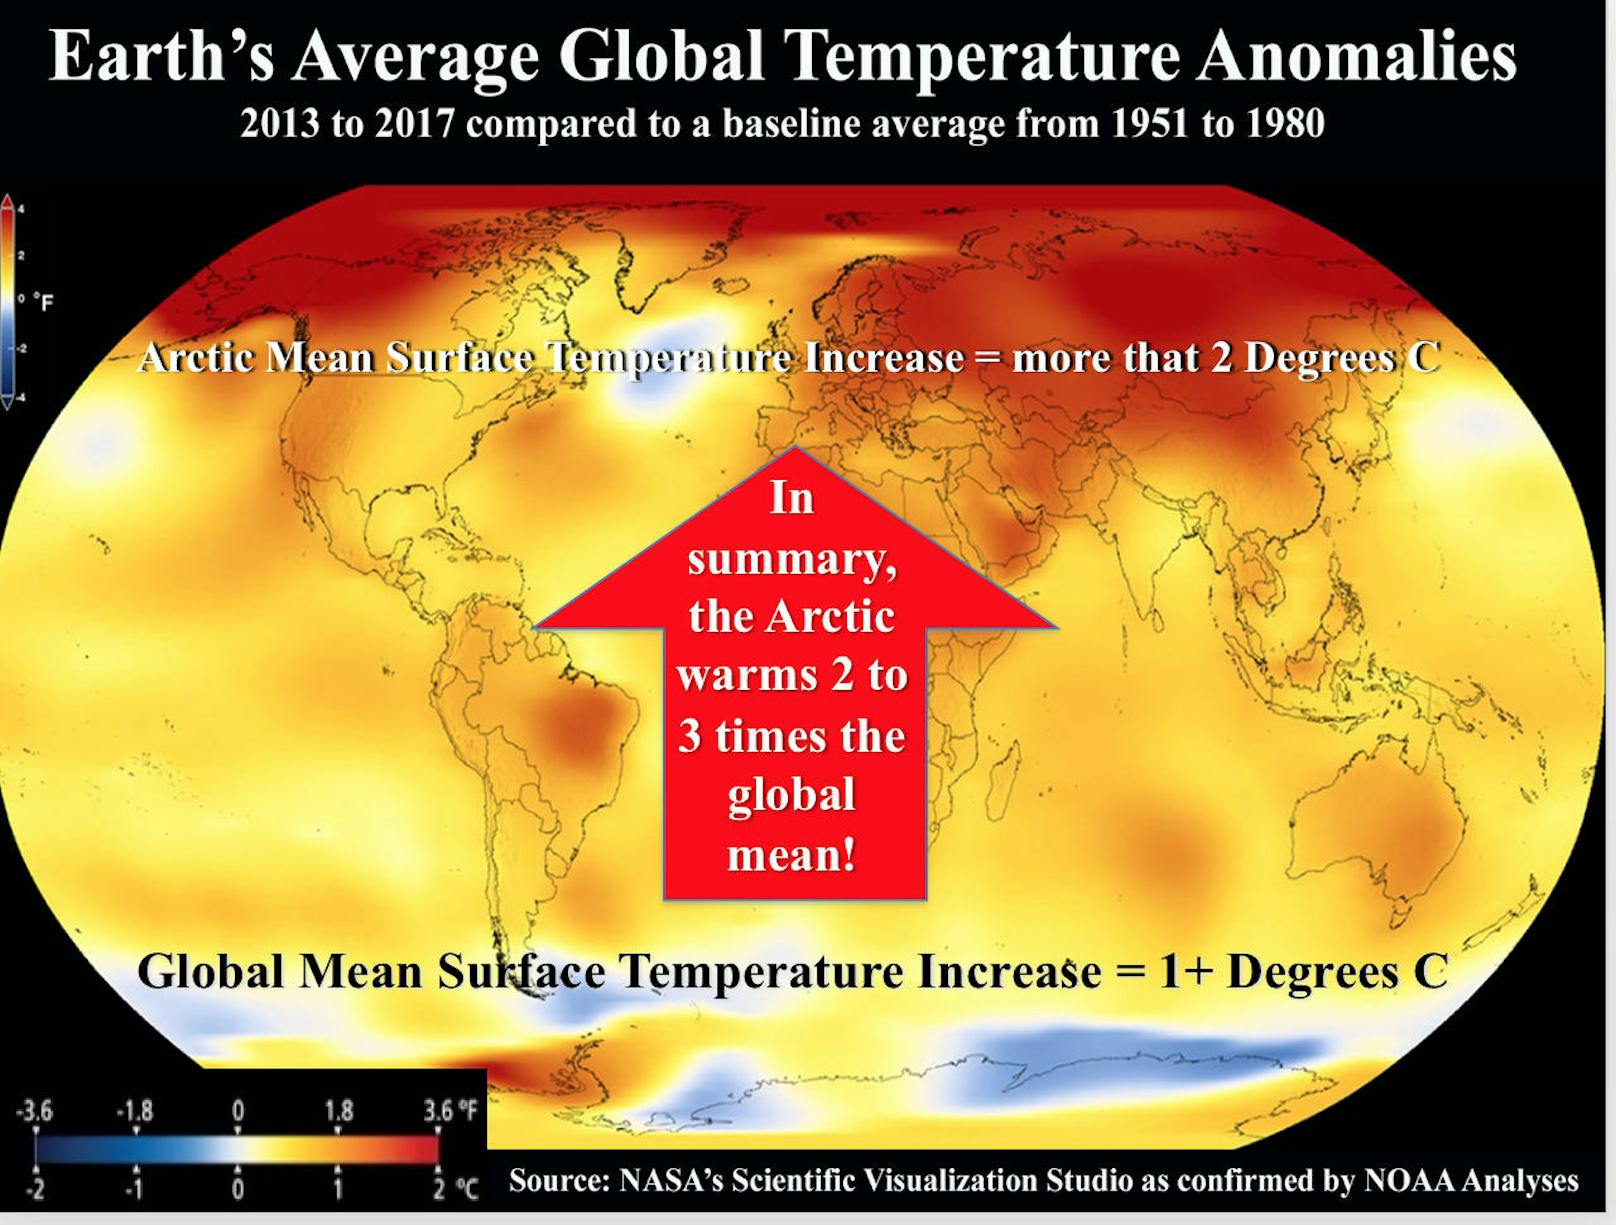 Alarmstufe Rot: Zwischen 2013 und 2017 erwärmte sich die Arktis durchschnittlich um mehr als zwei Grad (Vergleichswert: 1951-1980), die globale Erderwärmung betrug durchschnittlich über ein Grad.